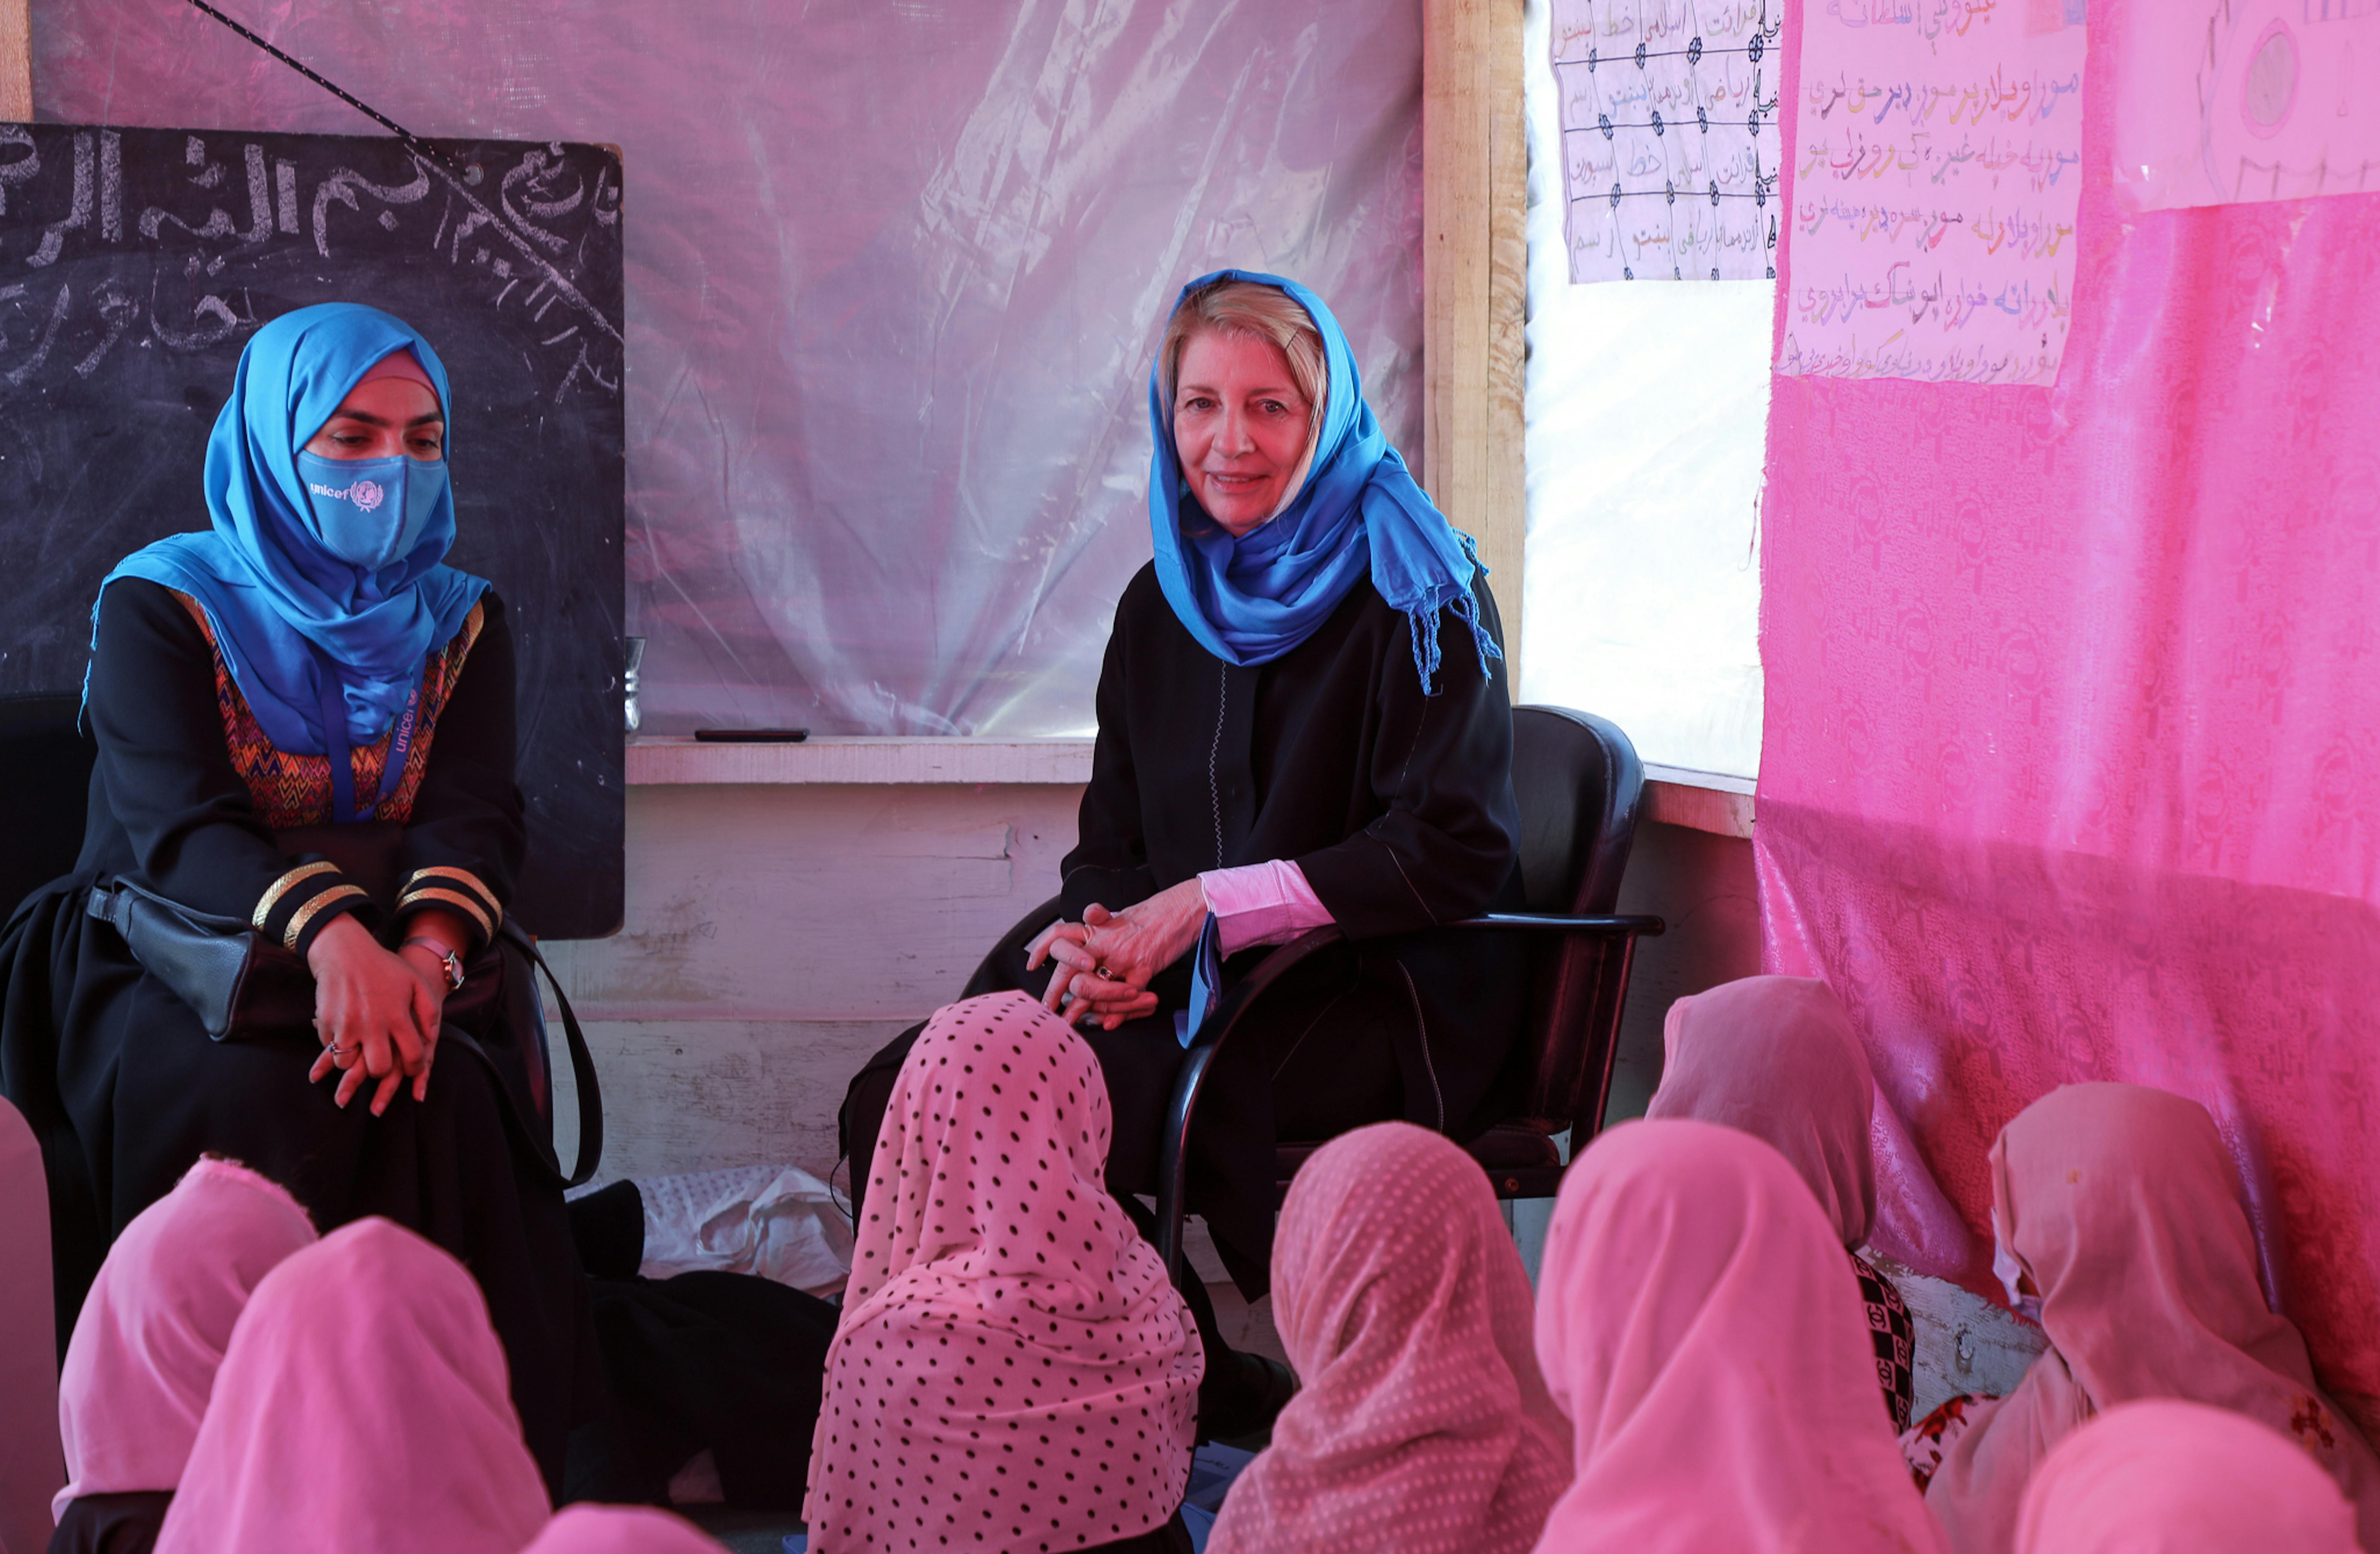 La Direttrice generale dell'UNICEF, Catherine Russell, incontra le ragazze di una scuola supportata dall'UNICEF, nel distretto di Kandahar’s Dand.